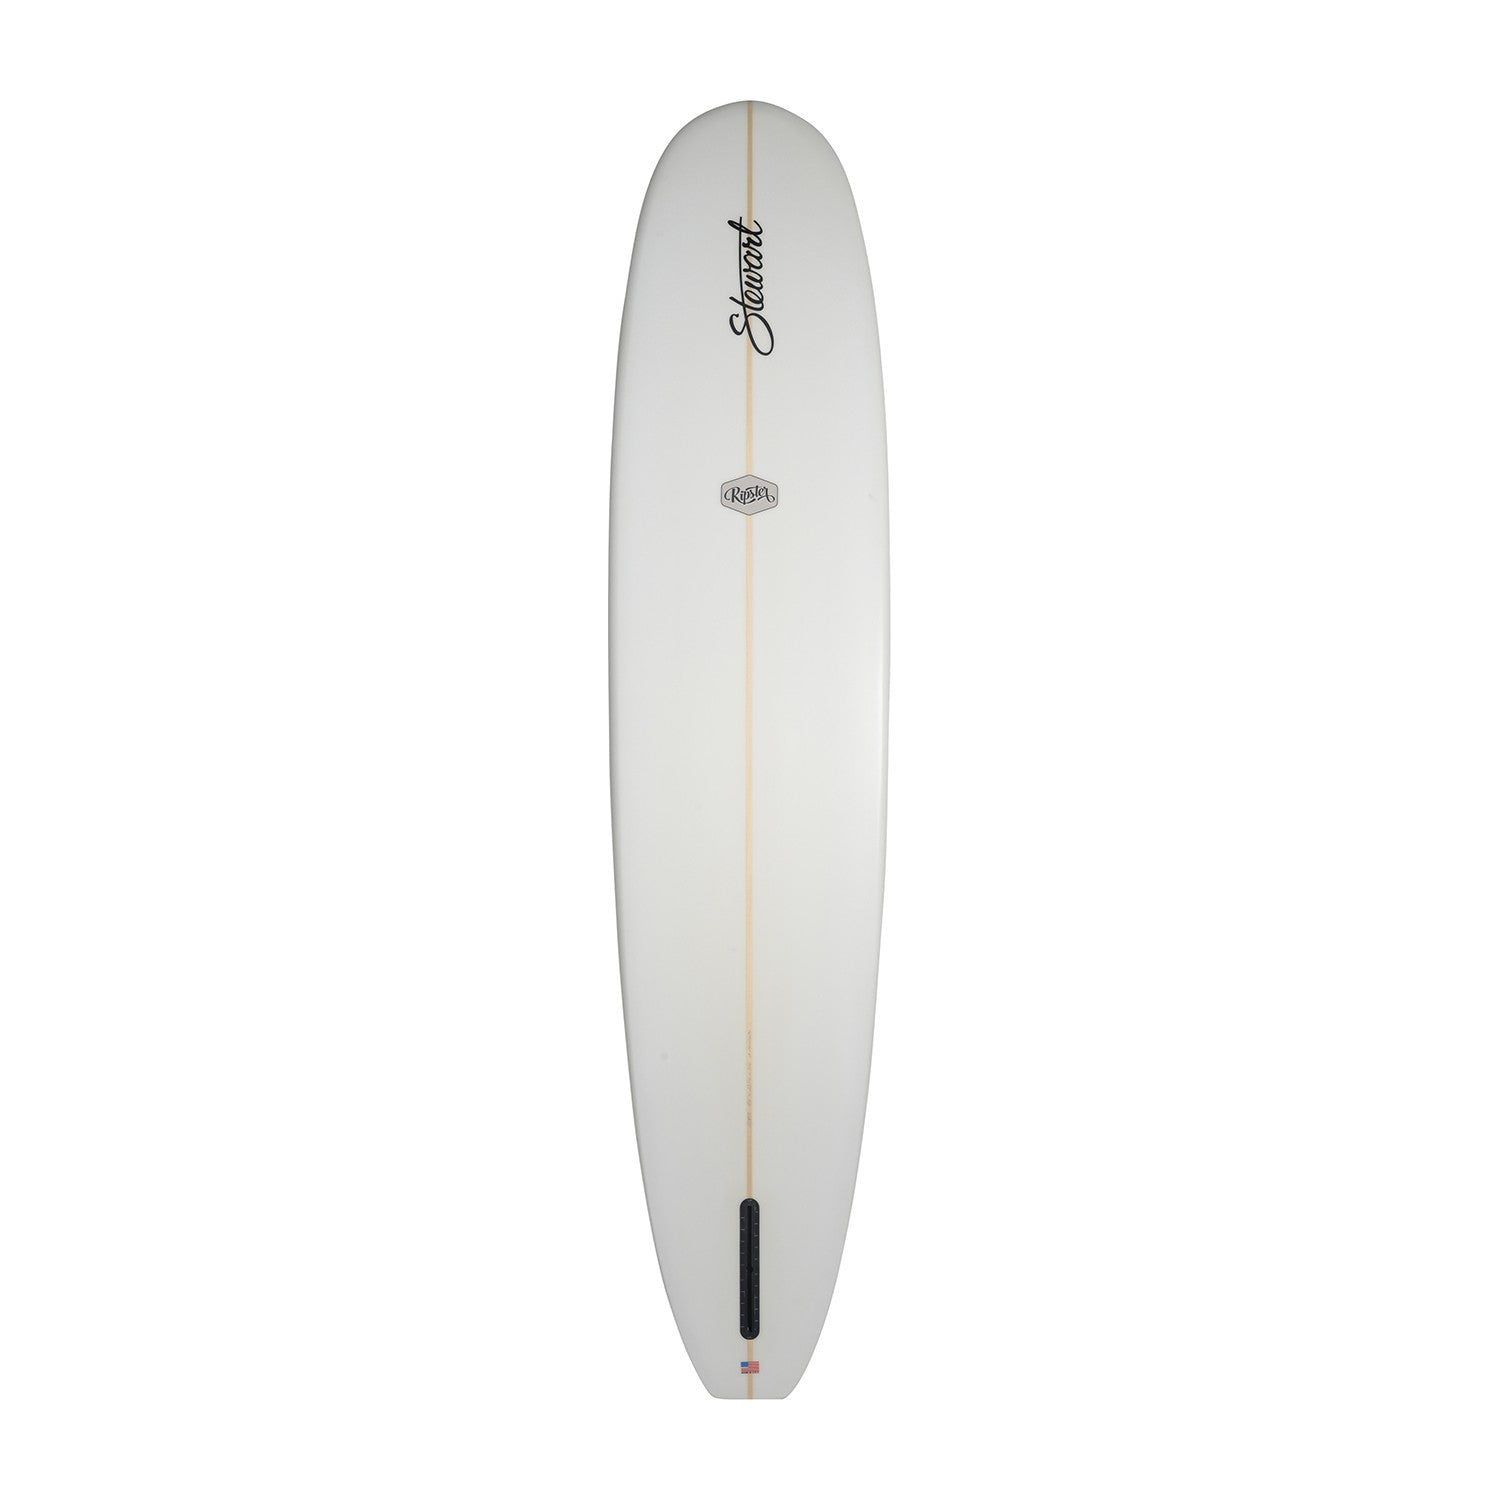 Tablas de surf STEWART - Ripster 9'4 (PU) - Transparente